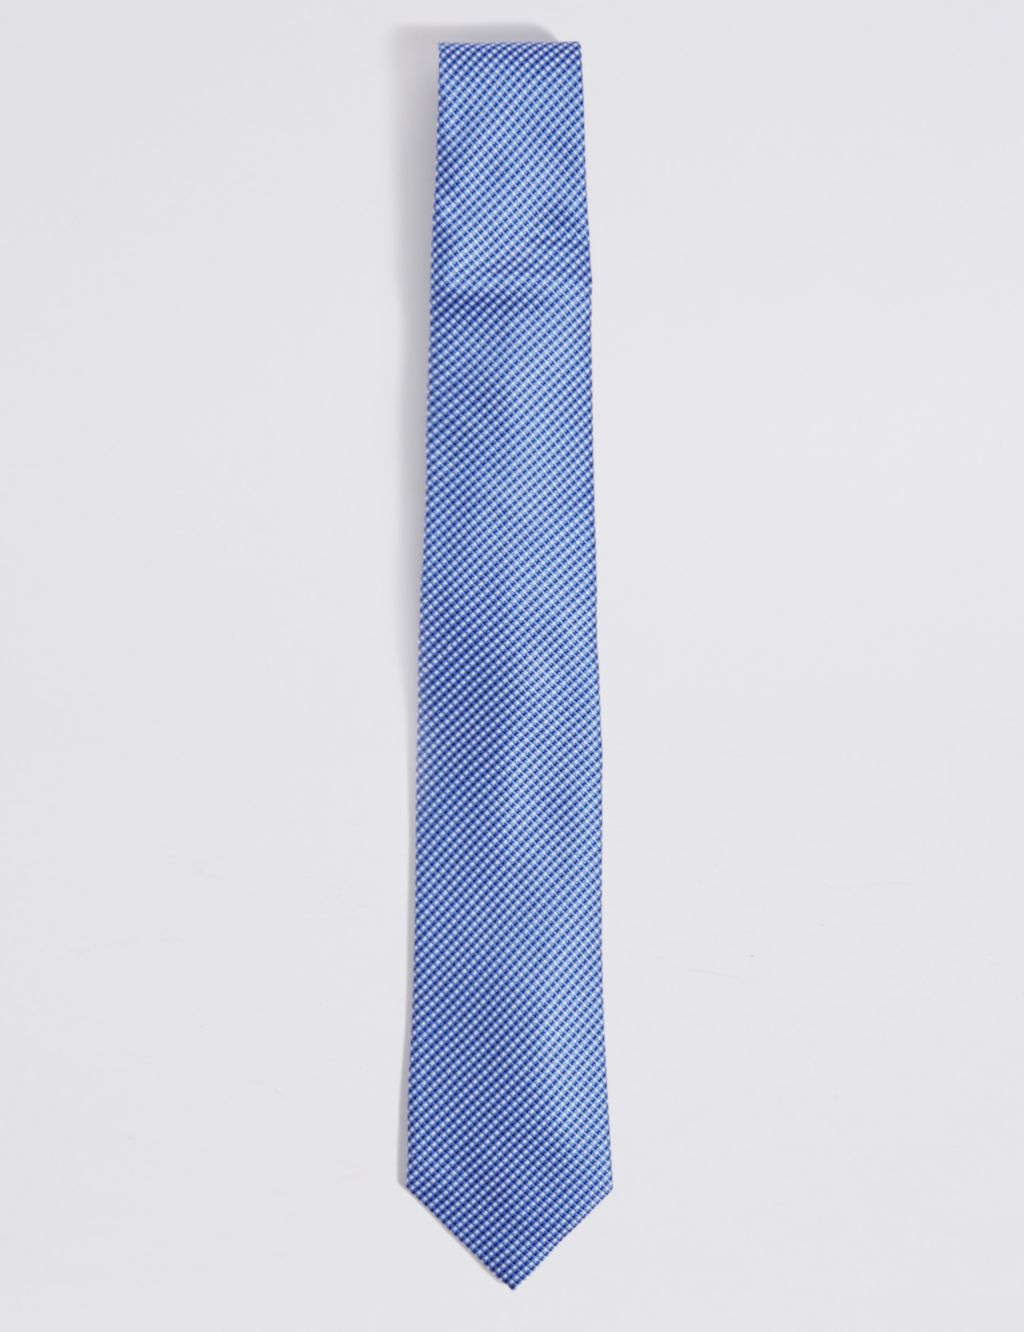 Textured Tie 3 of 3